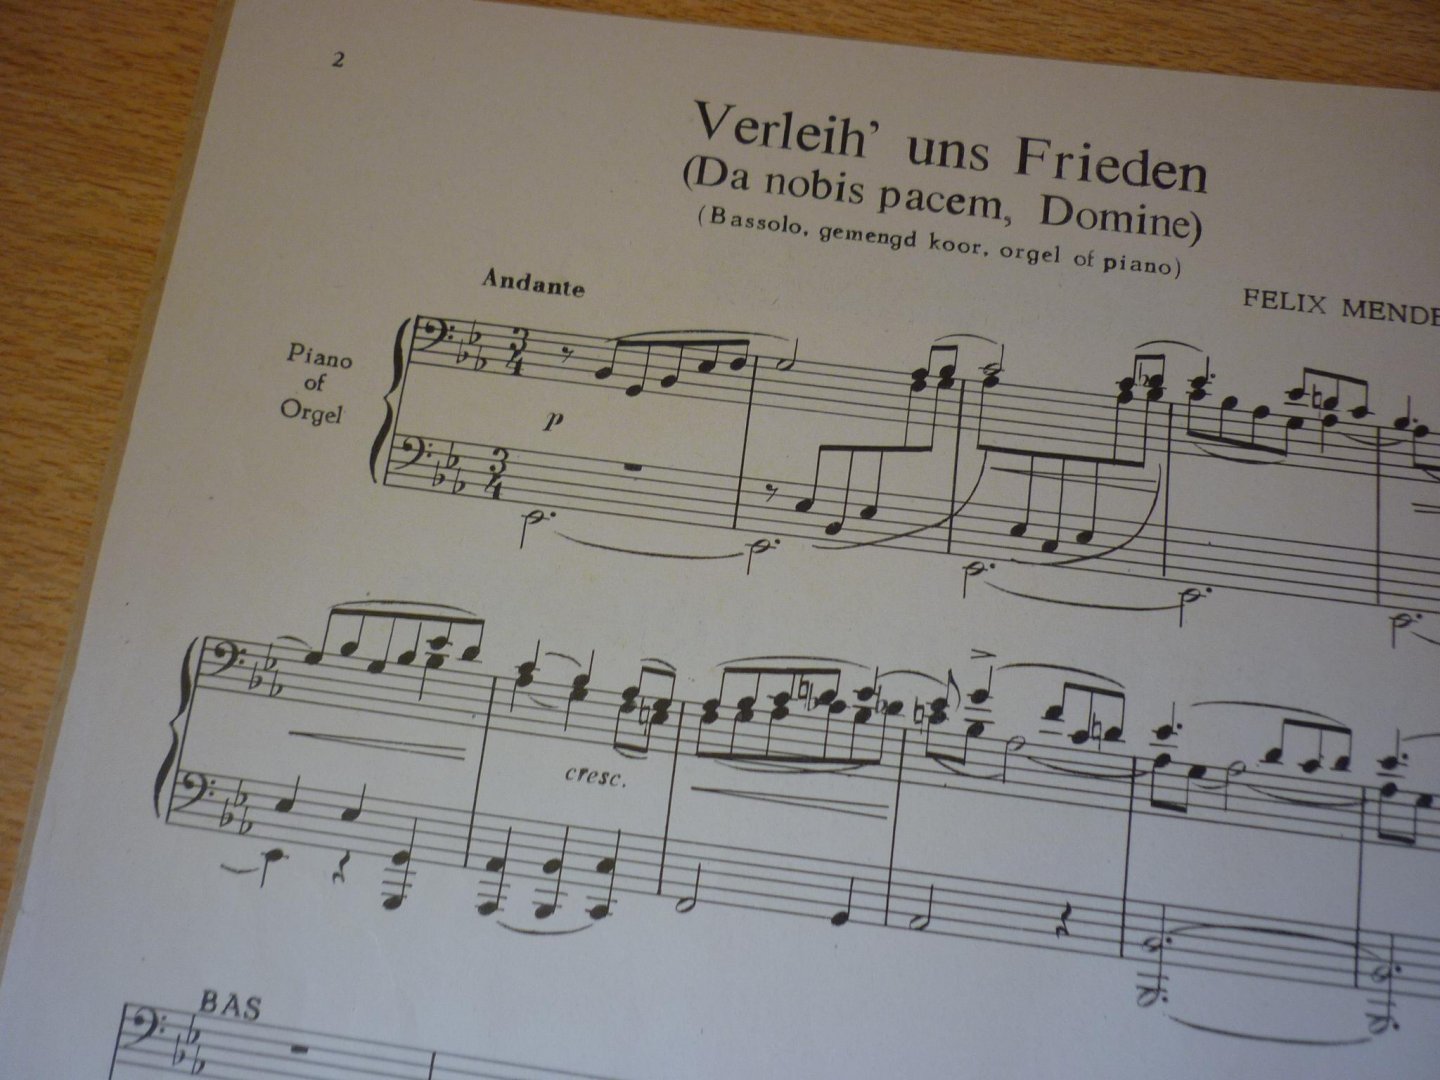 Mendelssohn-Bartholdy, Felix; (1809-1847) - Verleich' uns frieden  (Da nobis pacem, Domine)